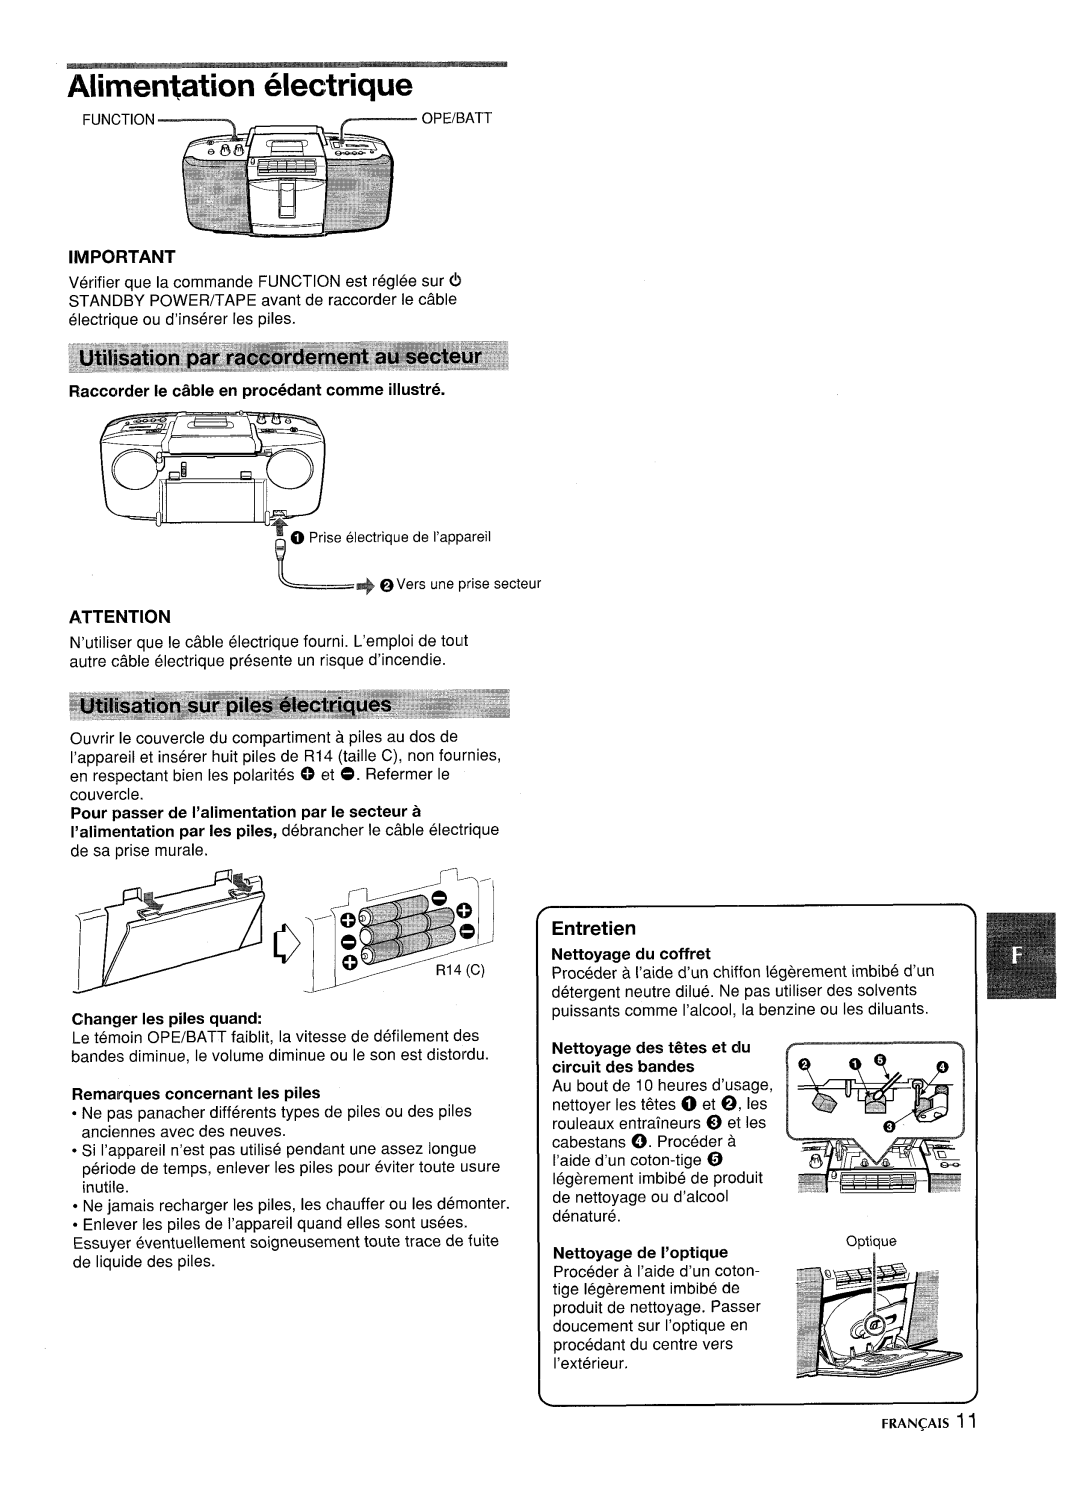 Aiwa CSD-SL15 manual Alimen~ation electrique, Flaccorder Ie ciible en procedant comme illustre, Changer Ies piles quand 